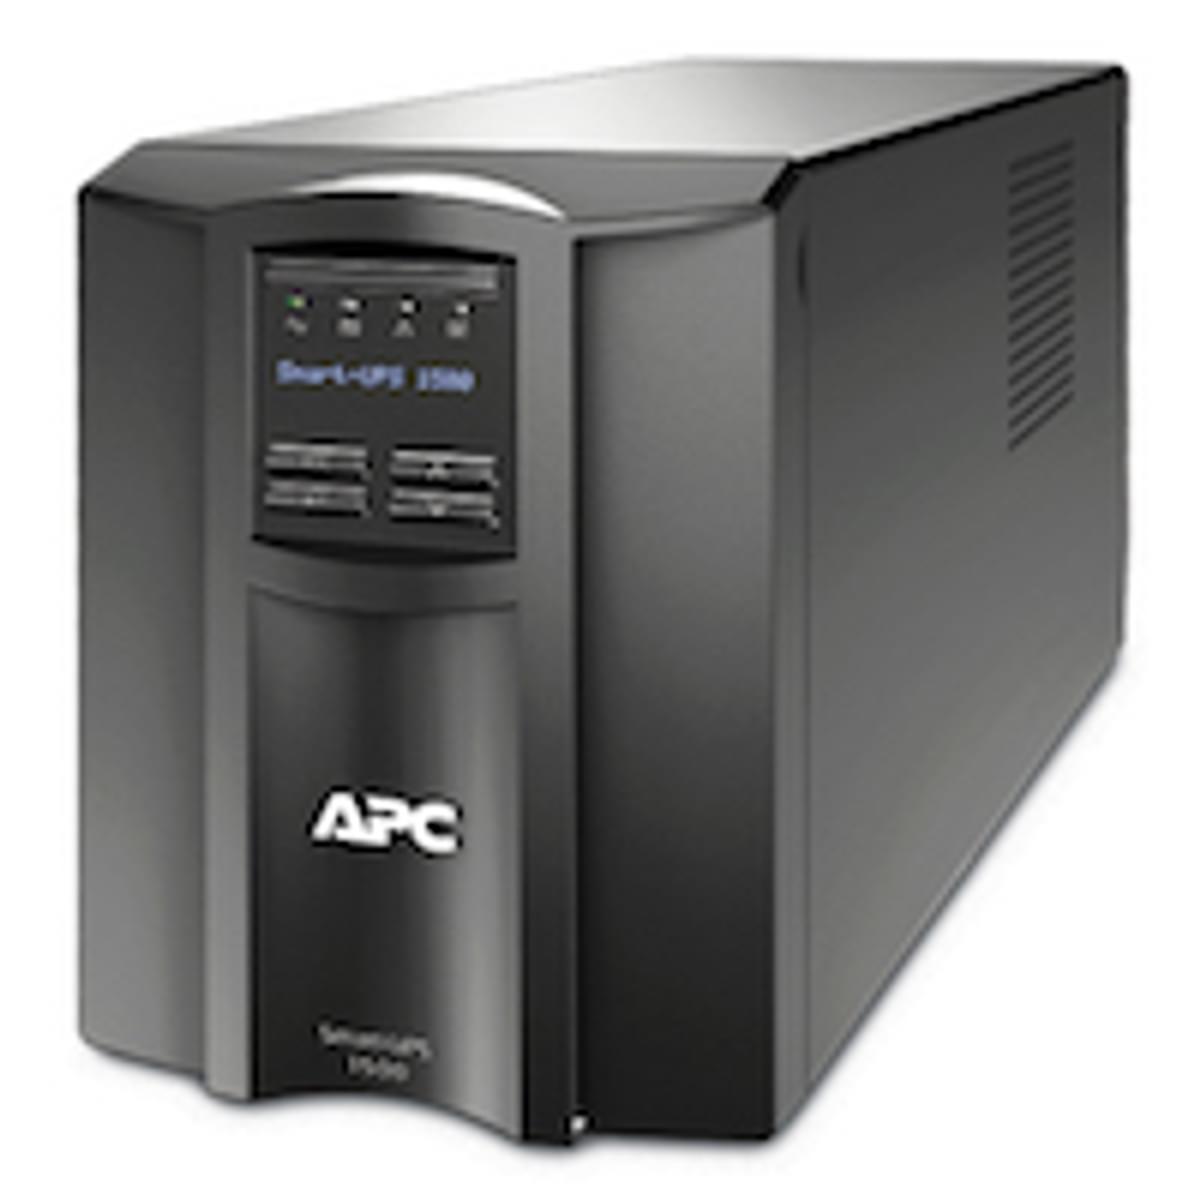 APC Smart-UPS systemen beschikbaar met korting image